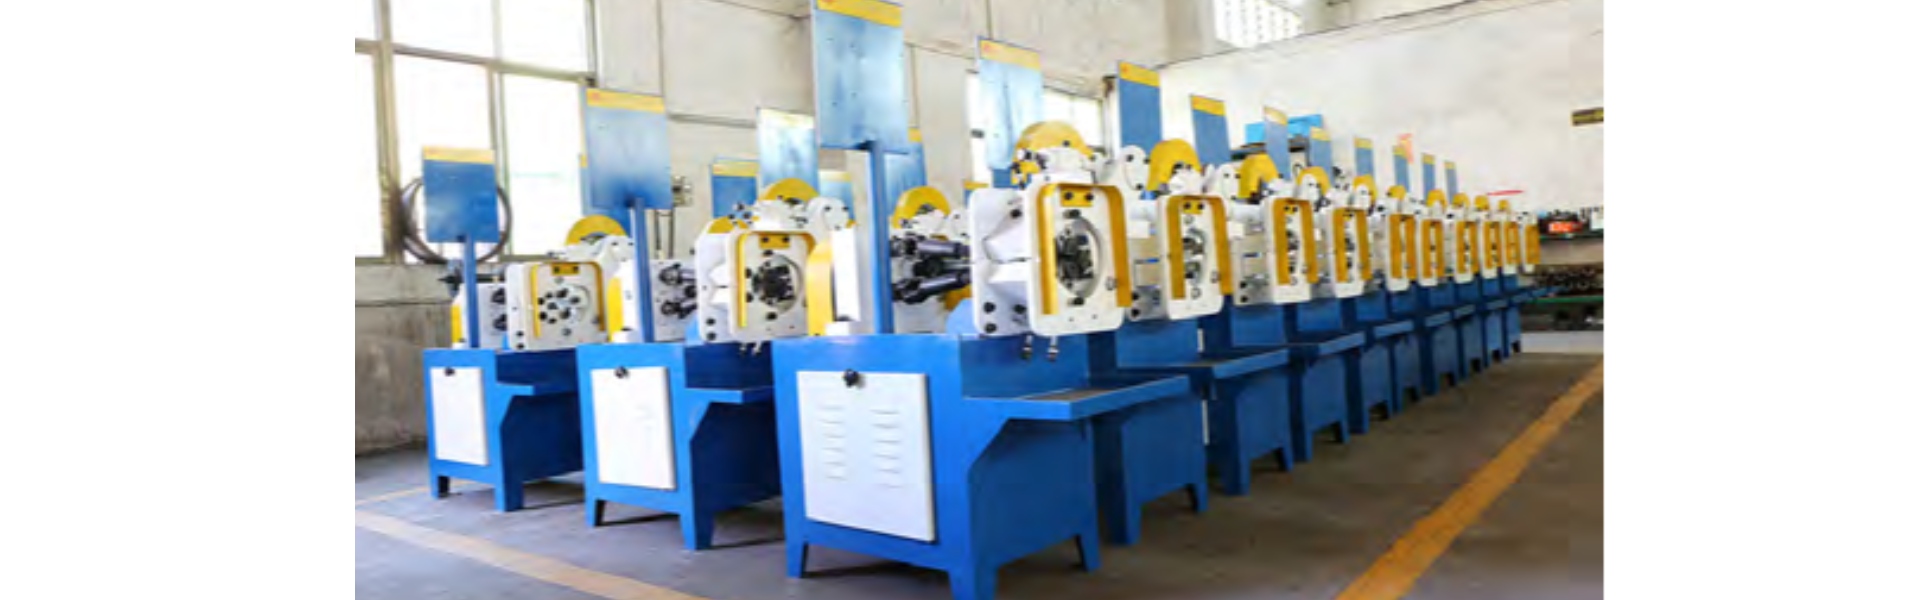 станок для калибровки валков, автомат для нарезки труб,Dongguan Hongbo Precision Machinery Manufacturing Co.,Ltd.